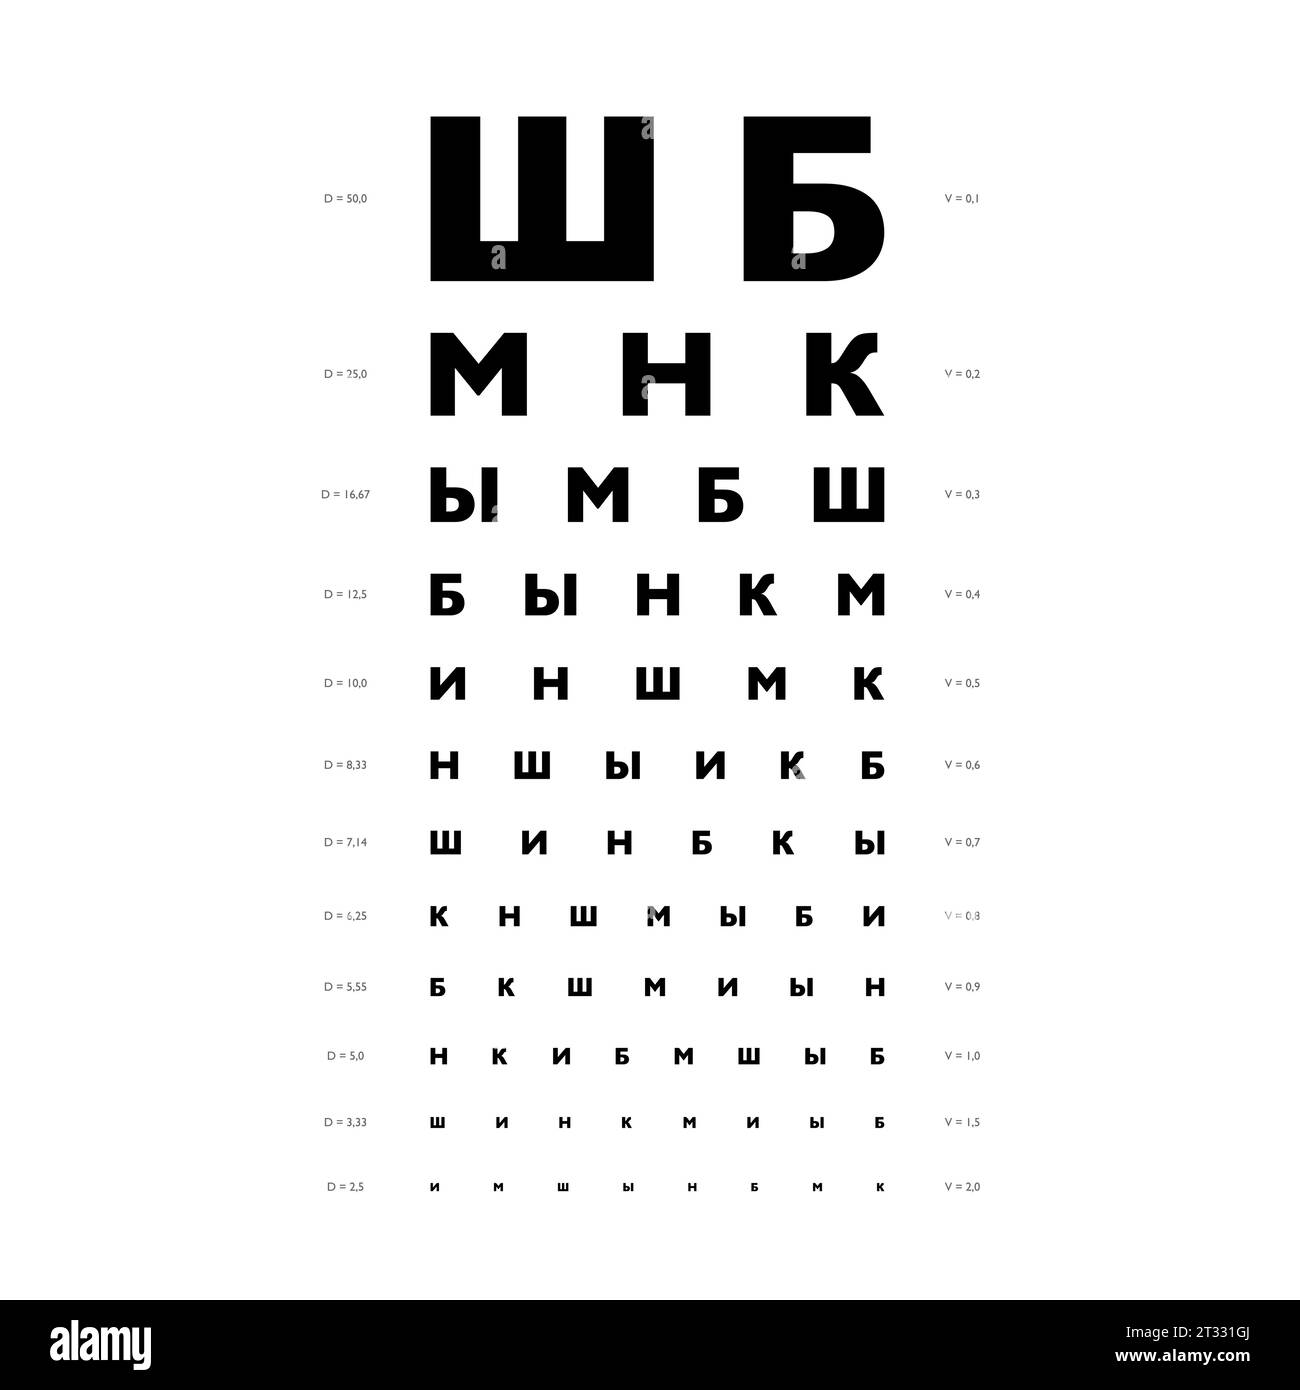 Tabella Golovin Sivtsev grafico del test oculare illustrazione medica. contorno stile di schizzo vettoriale di linea isolato su sfondo bianco. Test di visione con occhiali ottici di controllo optometrista su scheda con lettere cirilliche Illustrazione Vettoriale